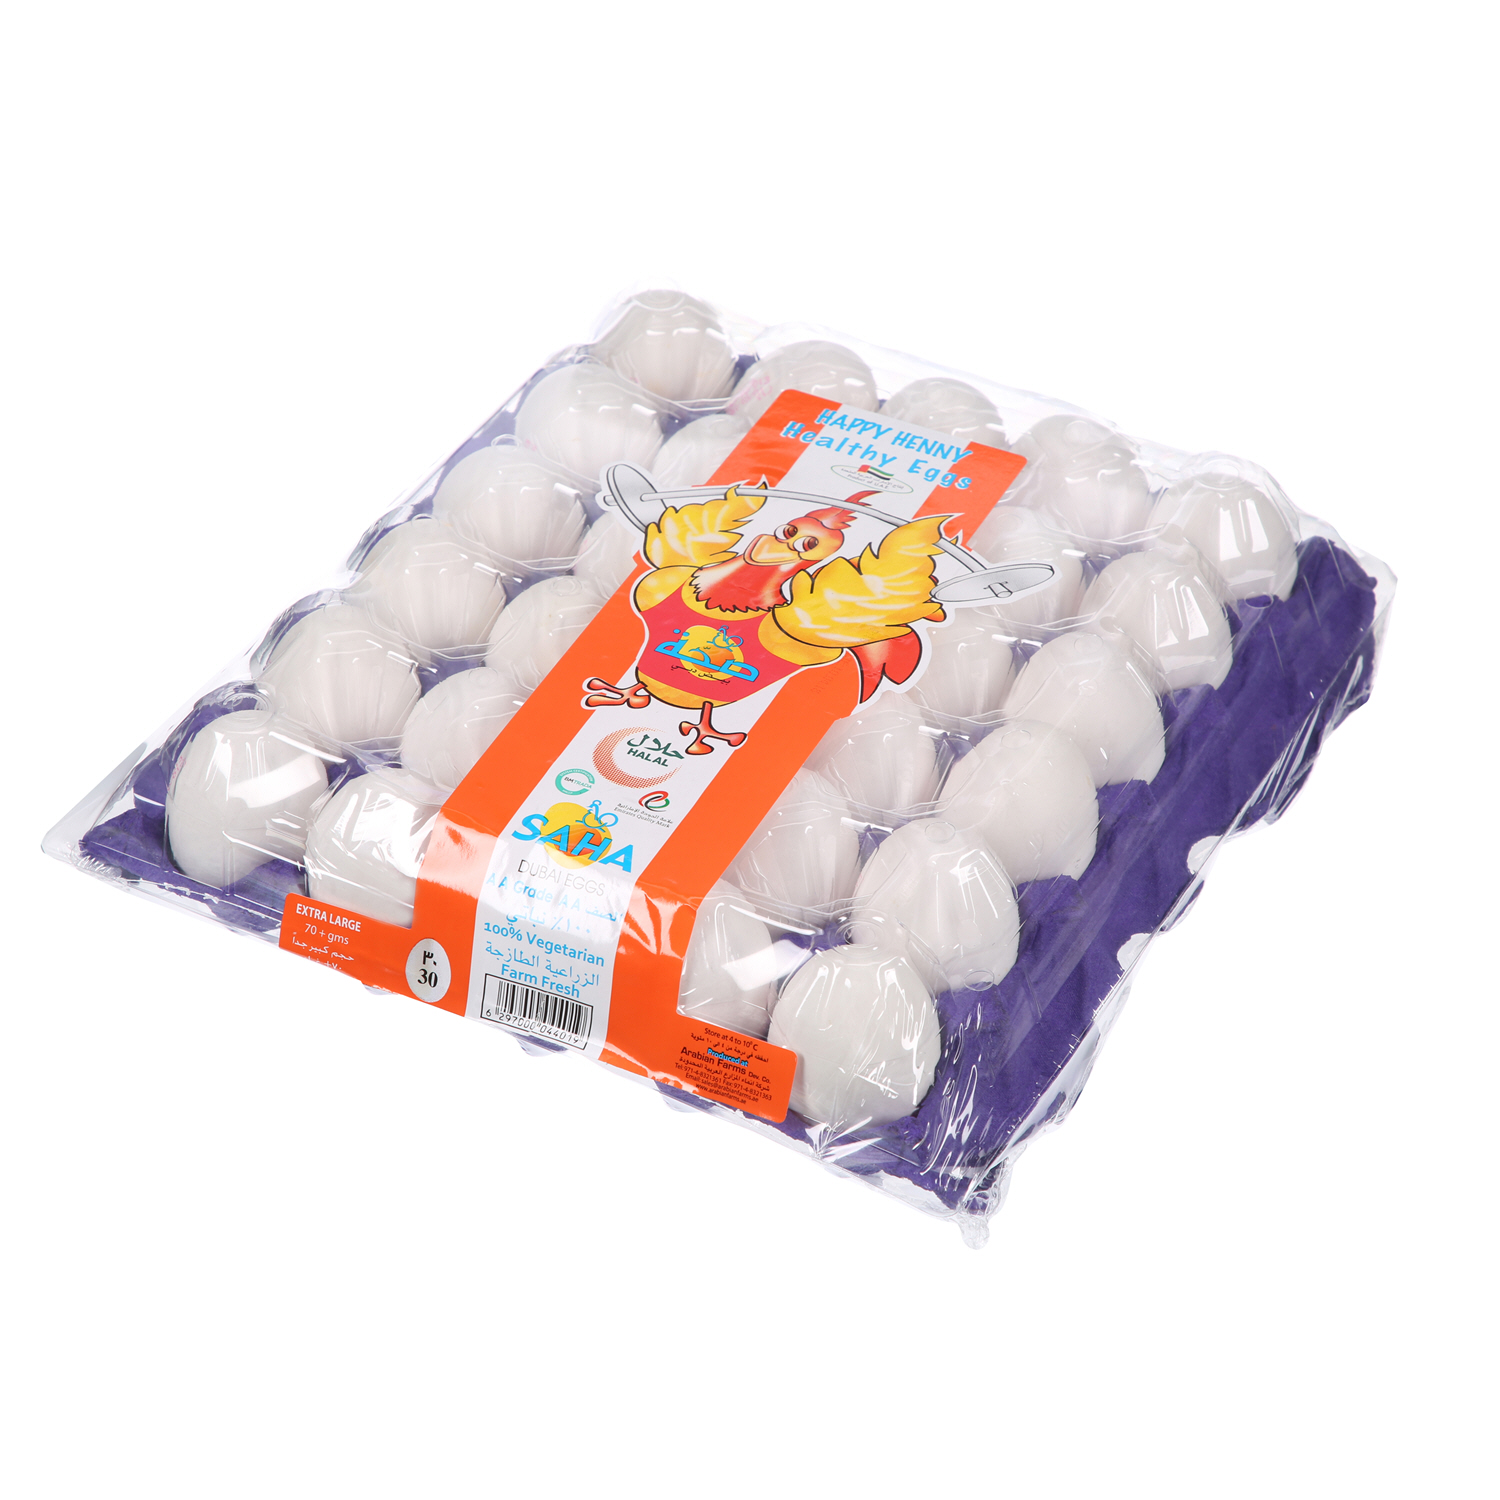 Saha Dubai White Eggs Extra Large 30 Pack